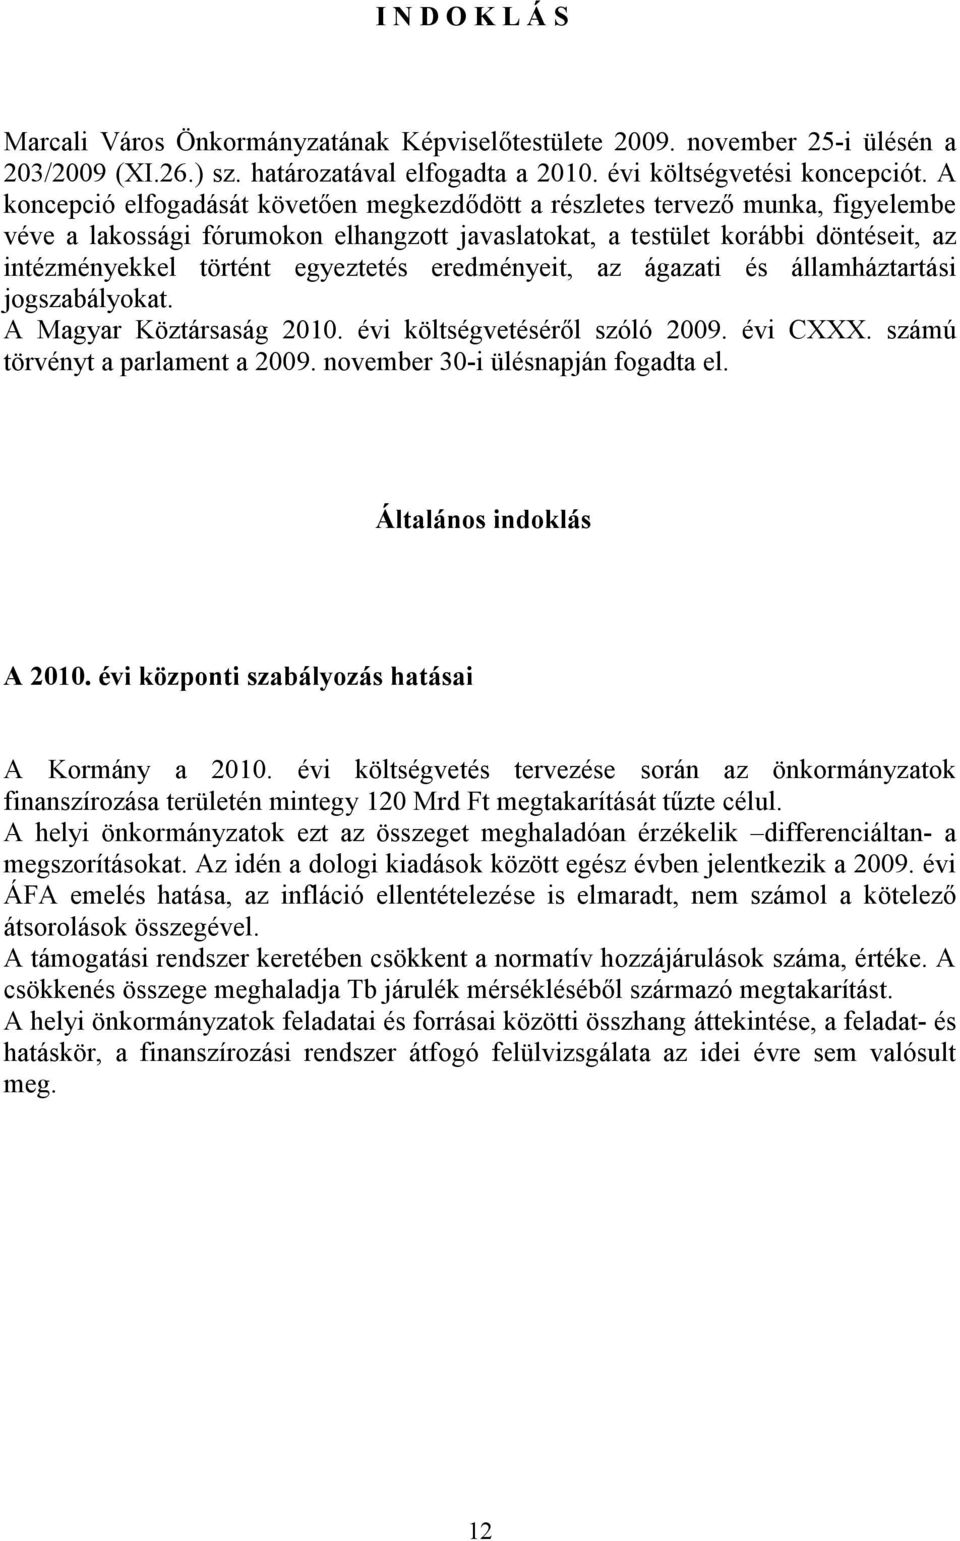 egyeztetés eredményeit, az ágazati és államháztartási jogszabályokat. A Magyar Köztársaság 2010. évi költségvetéséről szóló 2009. évi CXXX. számú törvényt a parlament a 2009.